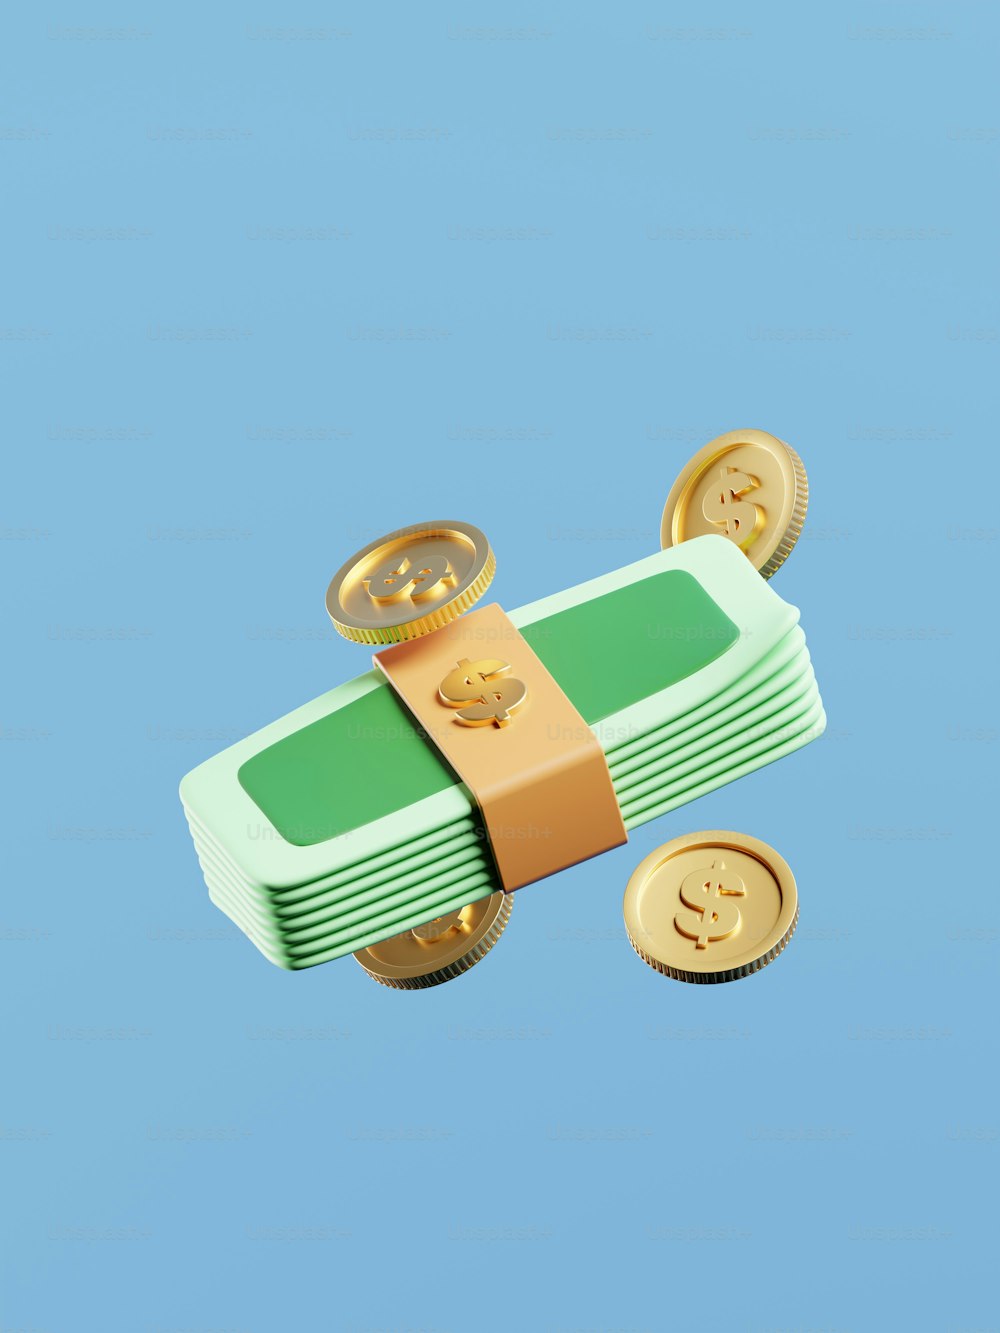 Una caja de dinero verde y dorada con monedas de oro